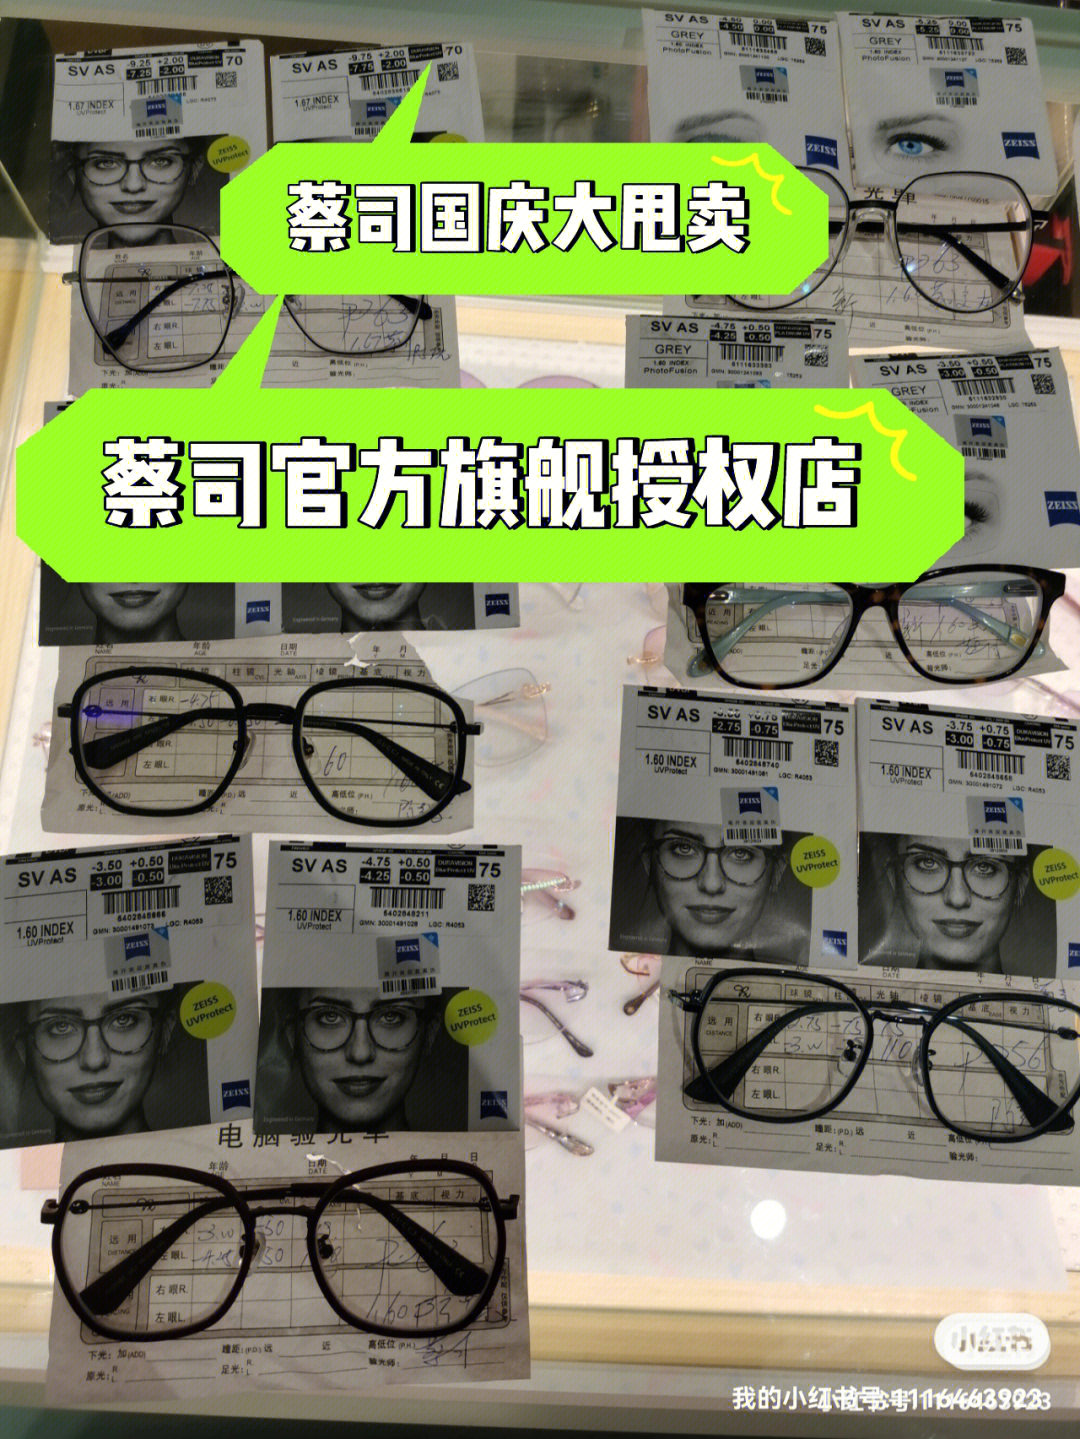 上海配眼镜估计这里最便宜